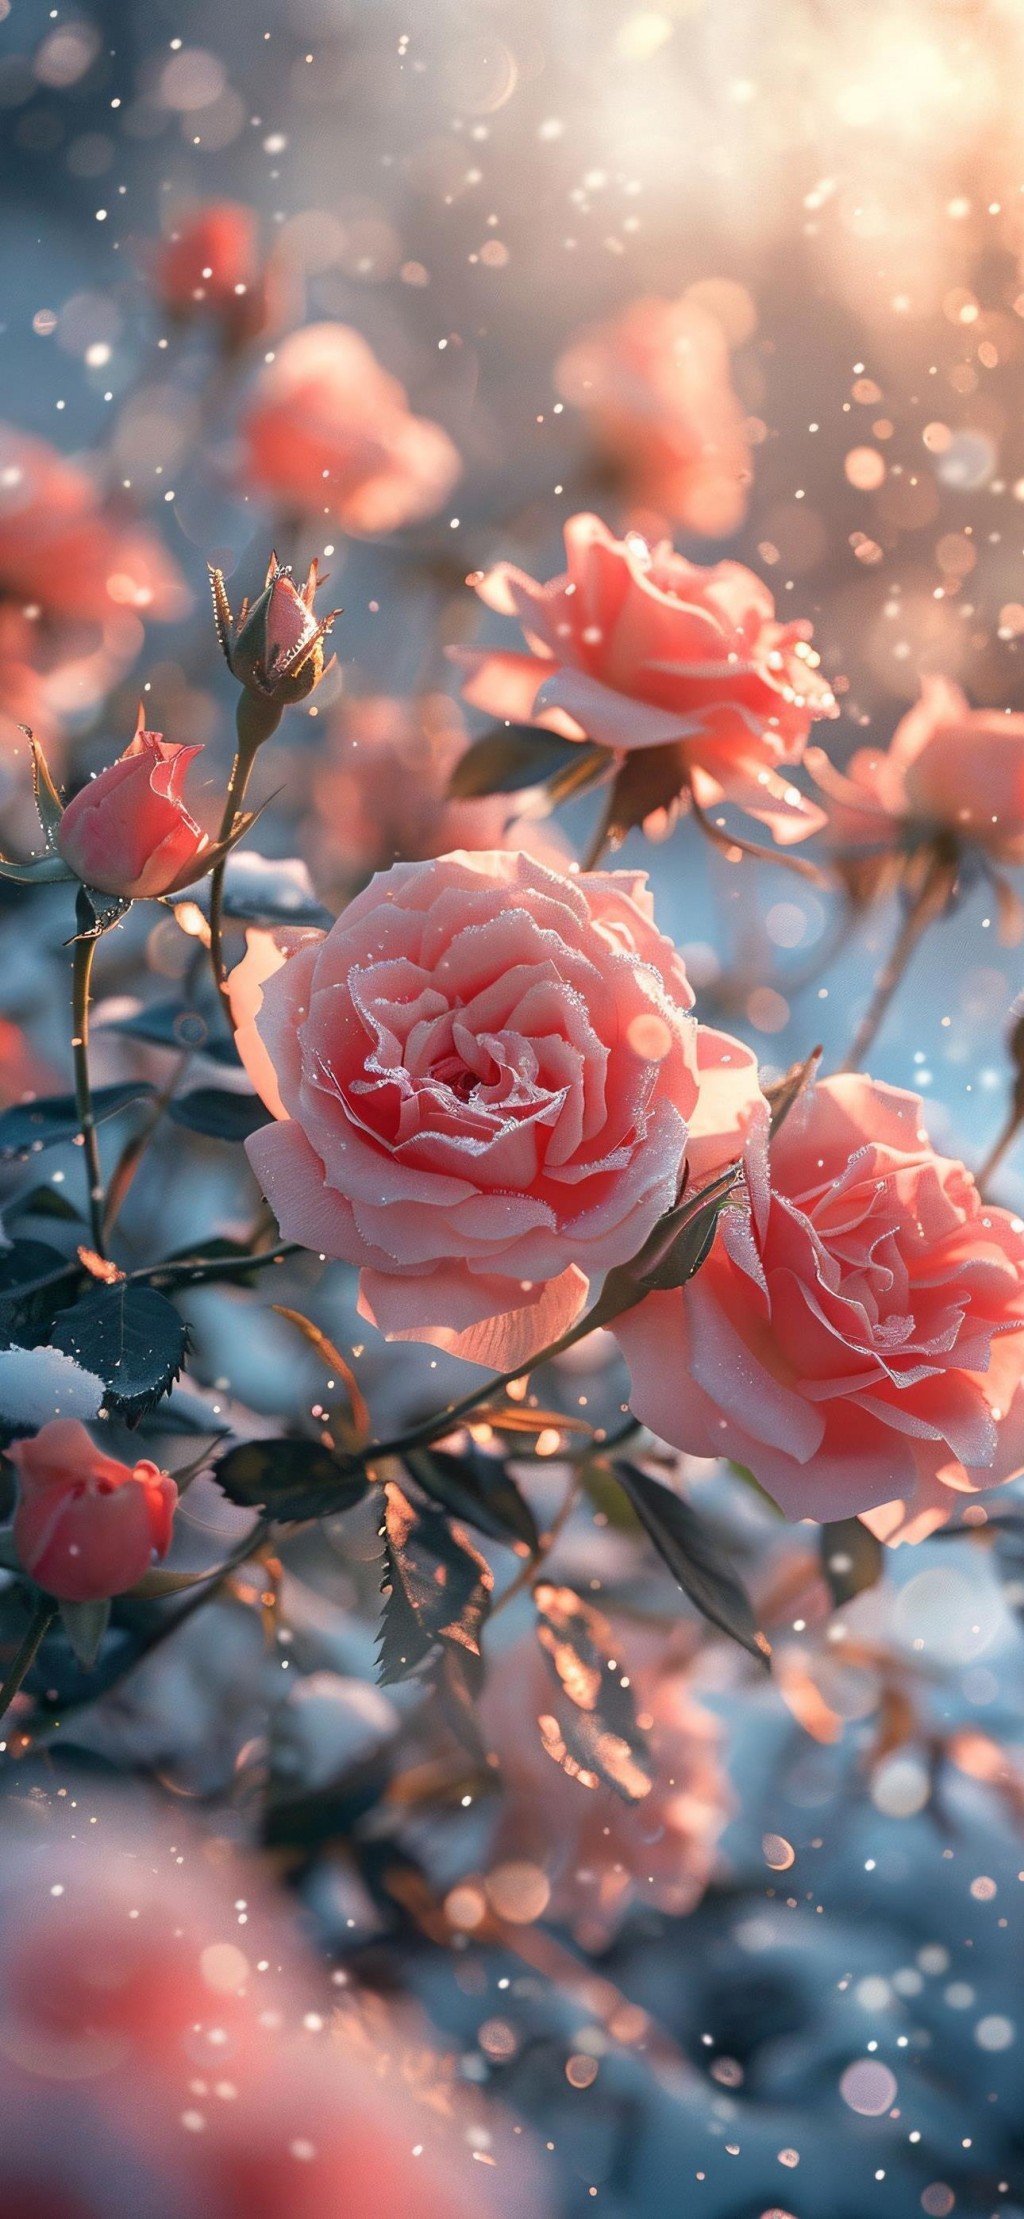 浪漫雪地粉色玫瑰花海手机壁纸